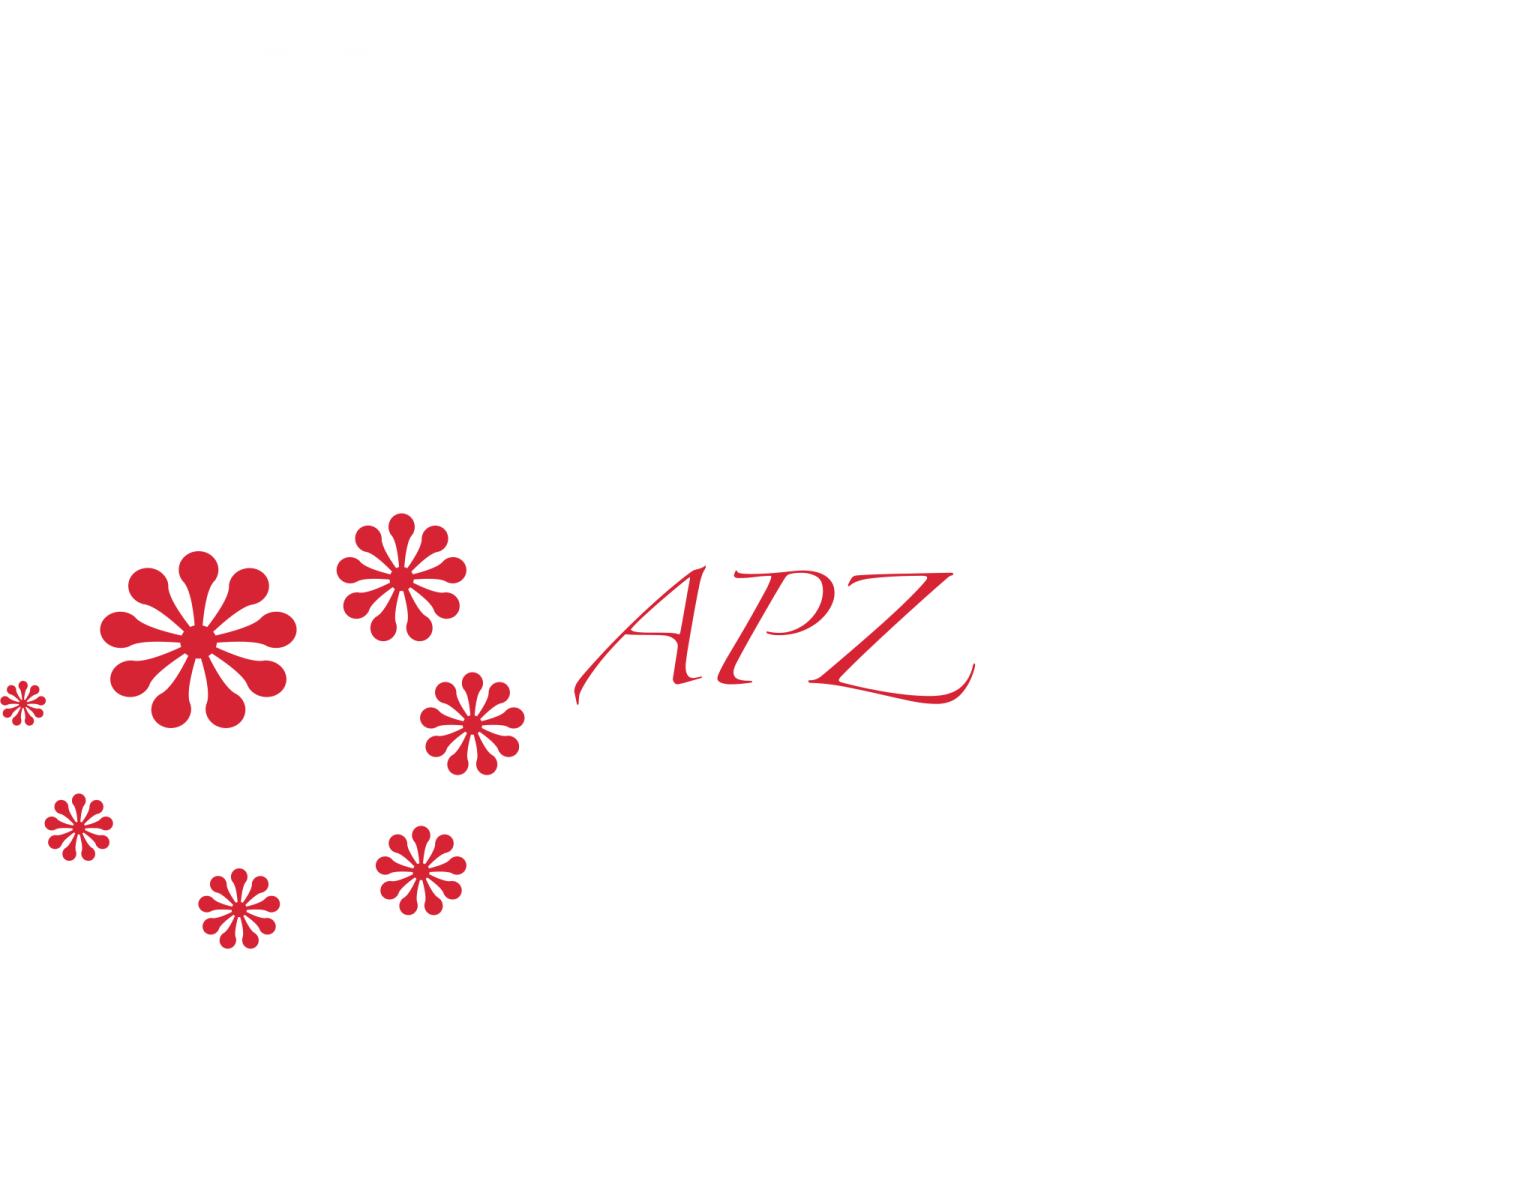 Akademski pevski zbor Tone Tomšič Univerze v Ljubljani 